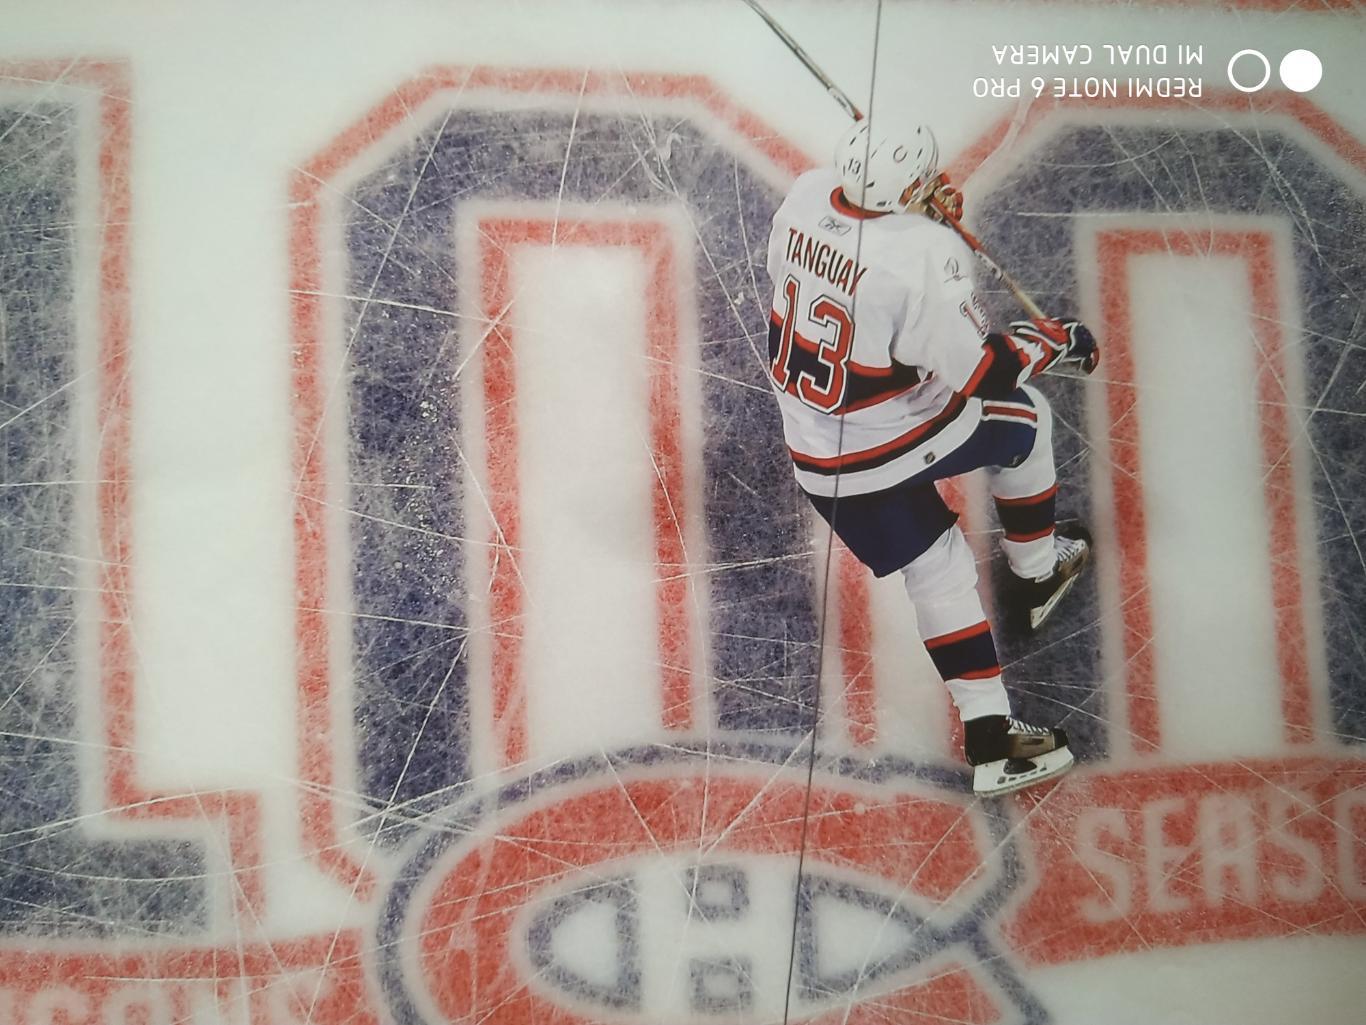 ХОККЕЙ ПРОГРАММА АЛЬБОМ НХЛ THE NHL HOCKEY YEAR IN PHOTOGRAPHS REFLECTIONS 2009 3